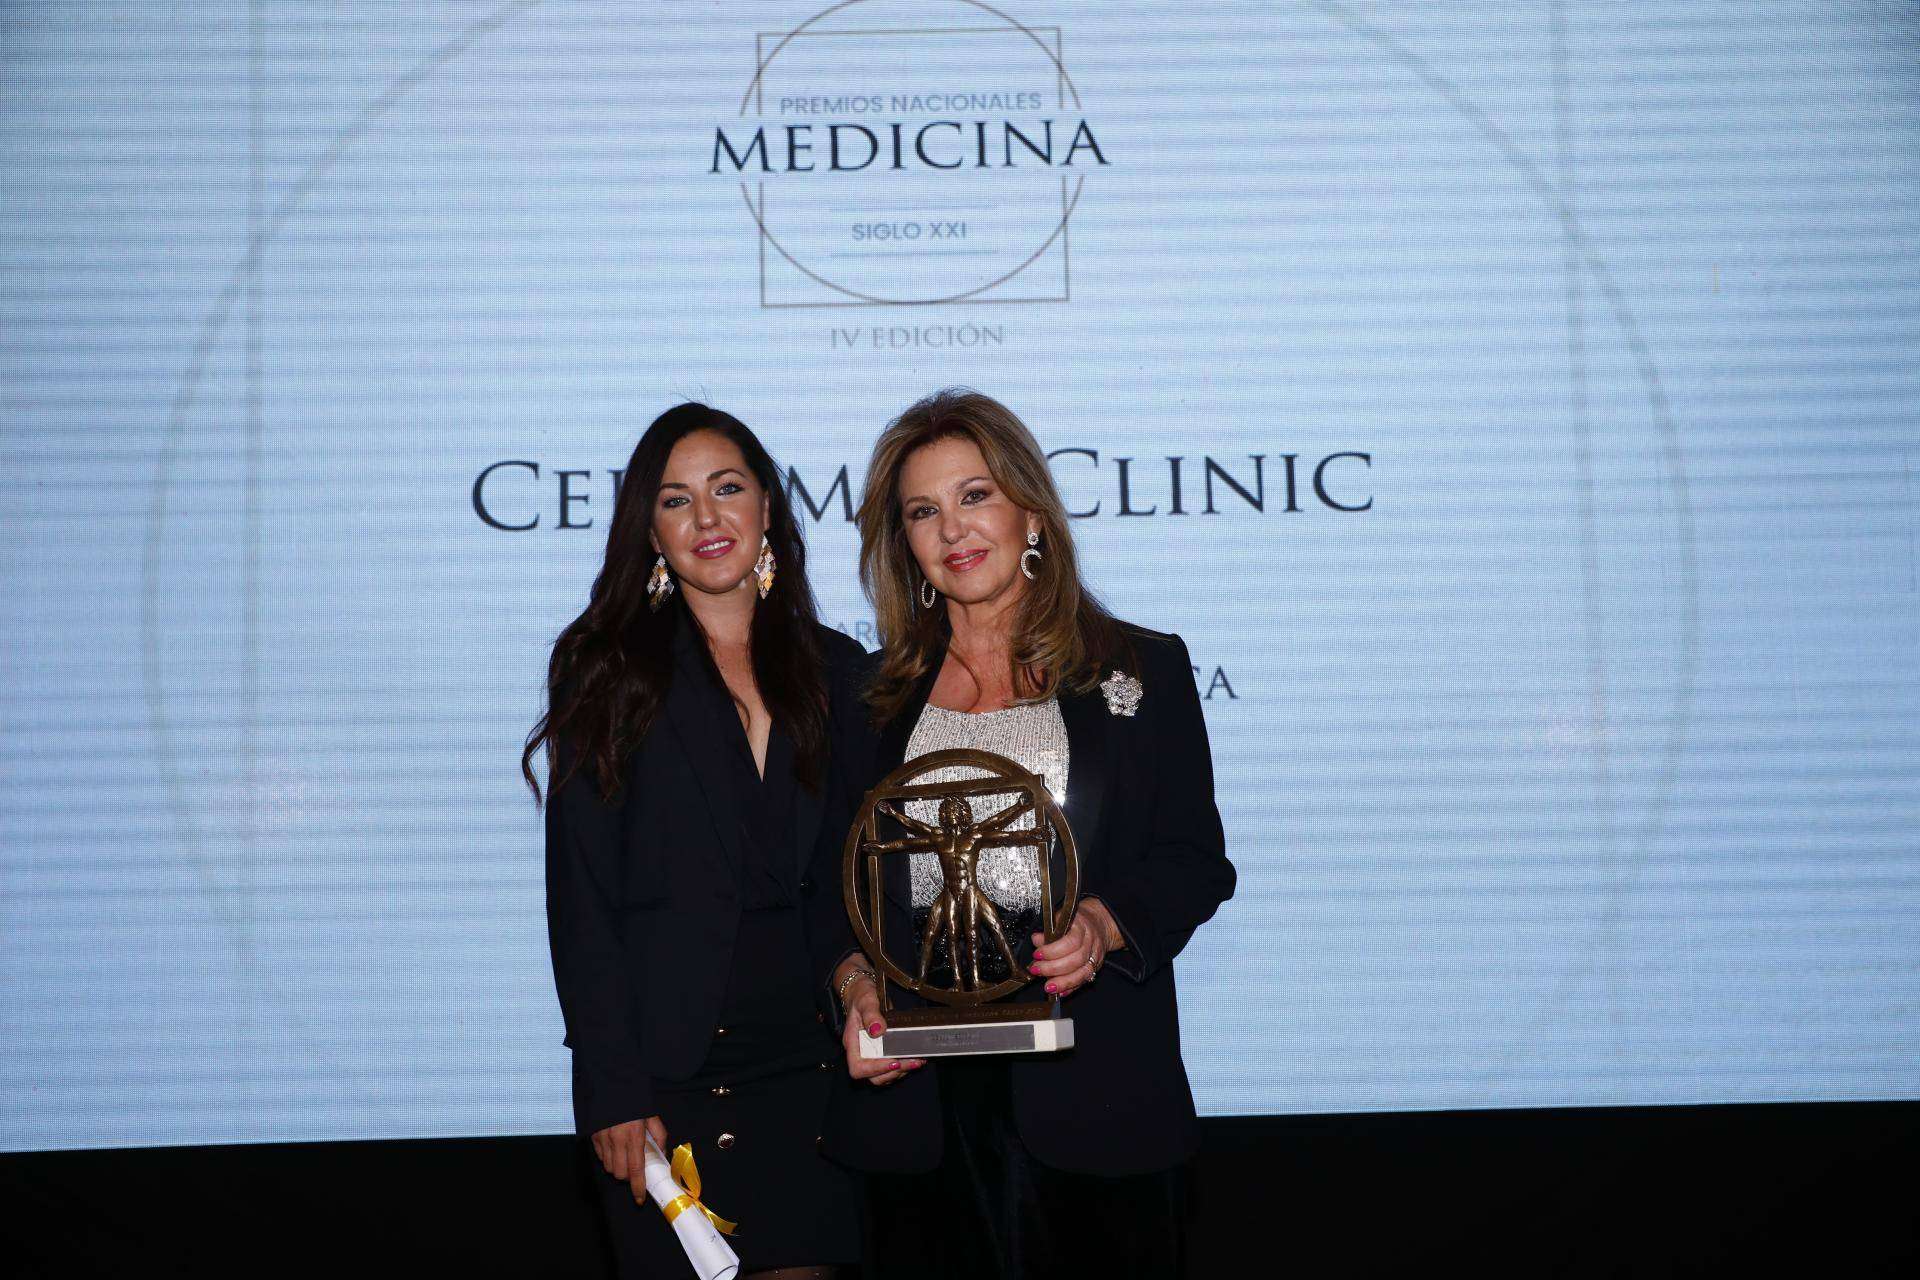 El equipo Cellumed Clinic: ganador de los Premios Nacionales en Medicina Siglo XXI por su innovación con Oncothermia o Nanothermia en oncología integrativa